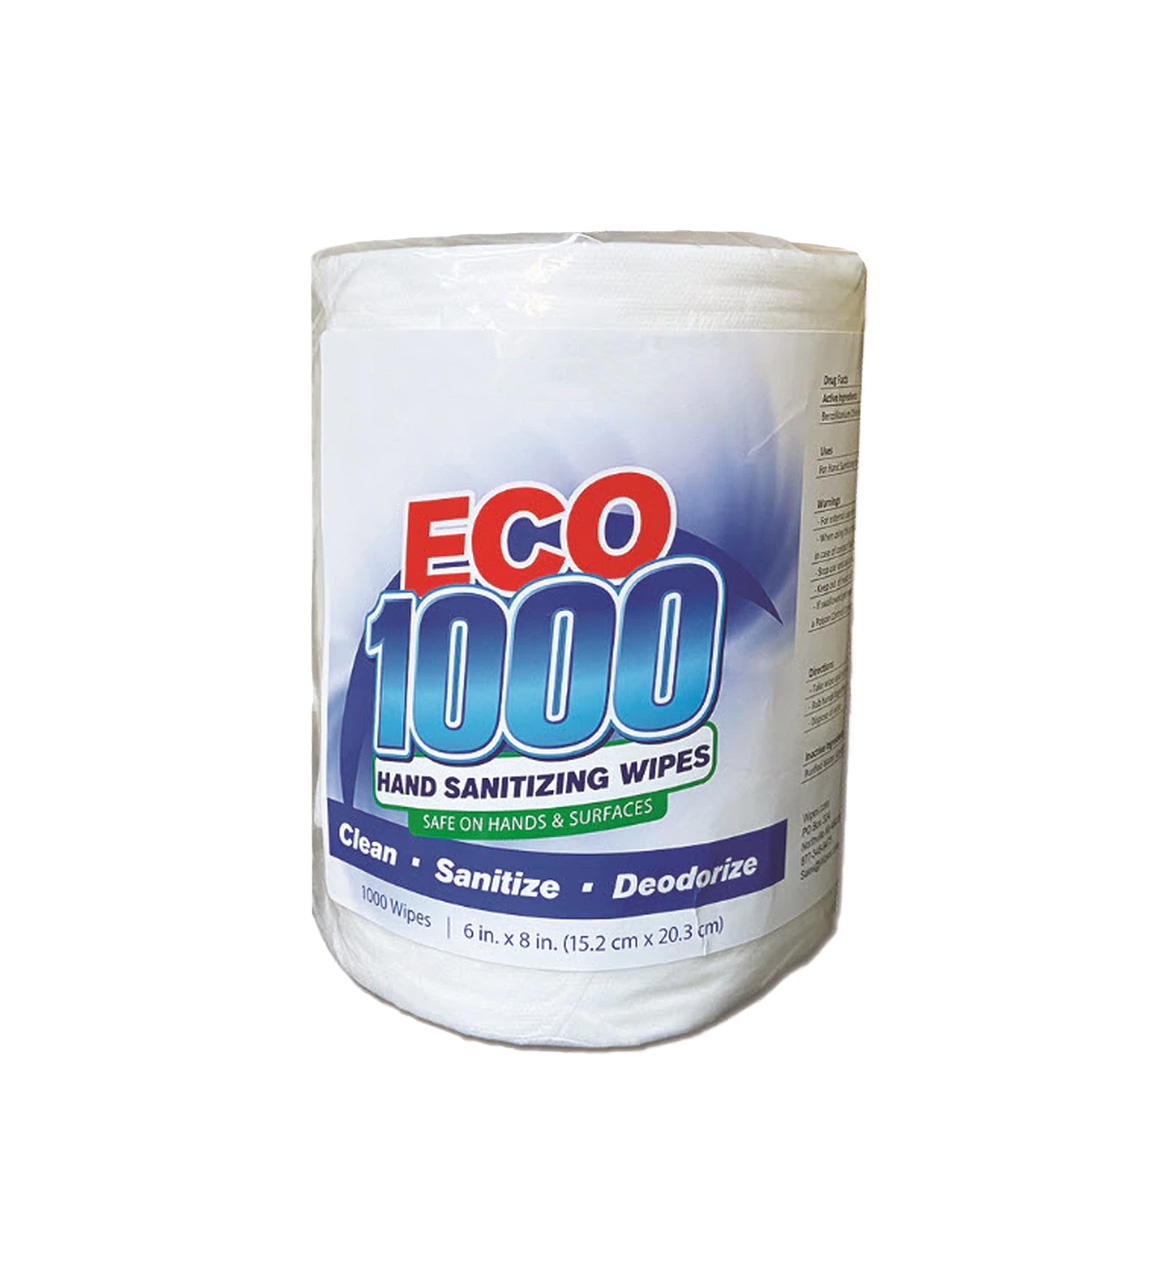 ECO1000 Sanitizing Wipes